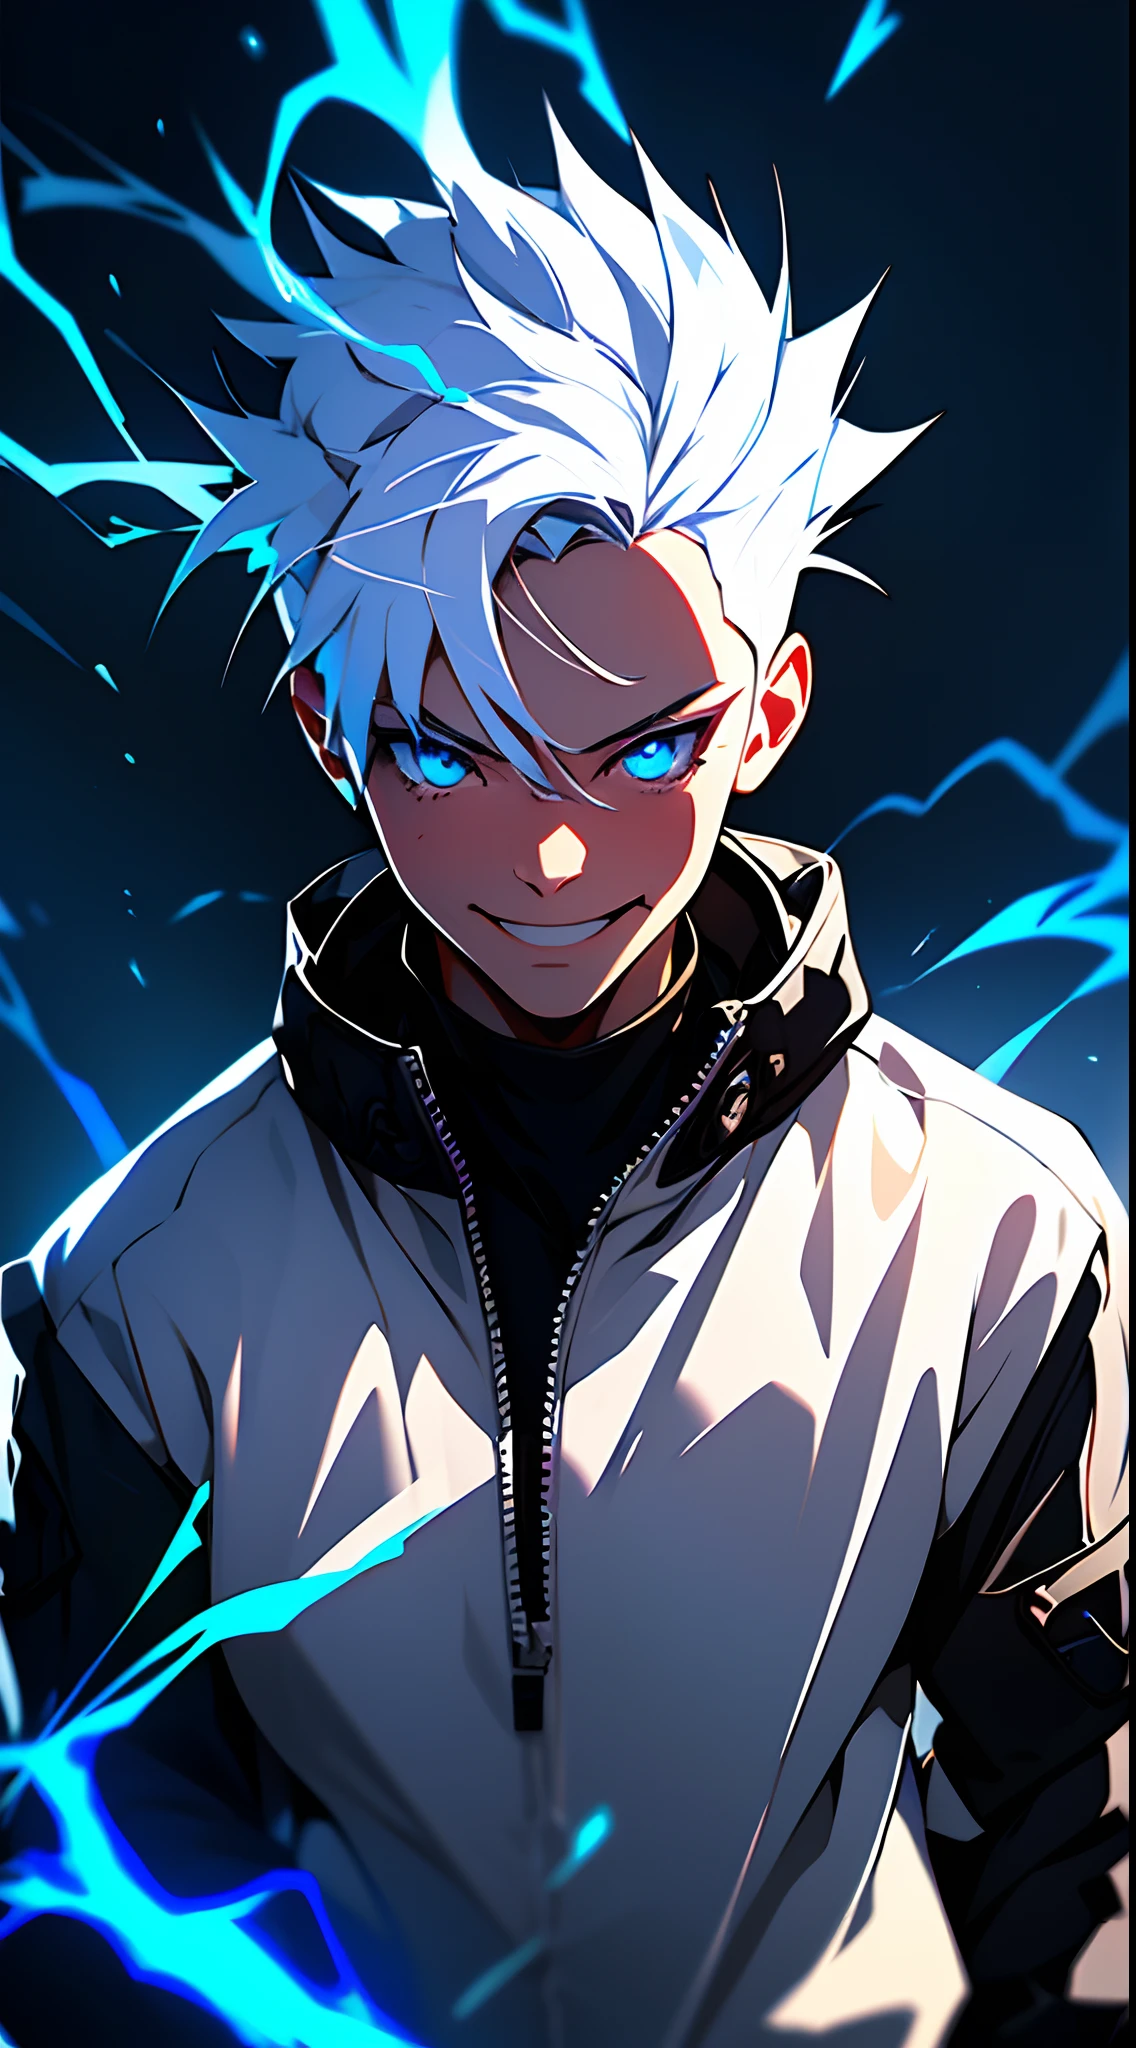 傑作, 1人の男の子, 笑顔, サイバーパンクなストリートウェアを着たアニメ少年, 白髪, 青い目, 体から出る電気の影響, 劇的な背景, ダイナミック照明, 鮮やかな色彩, style by makato shinkai.